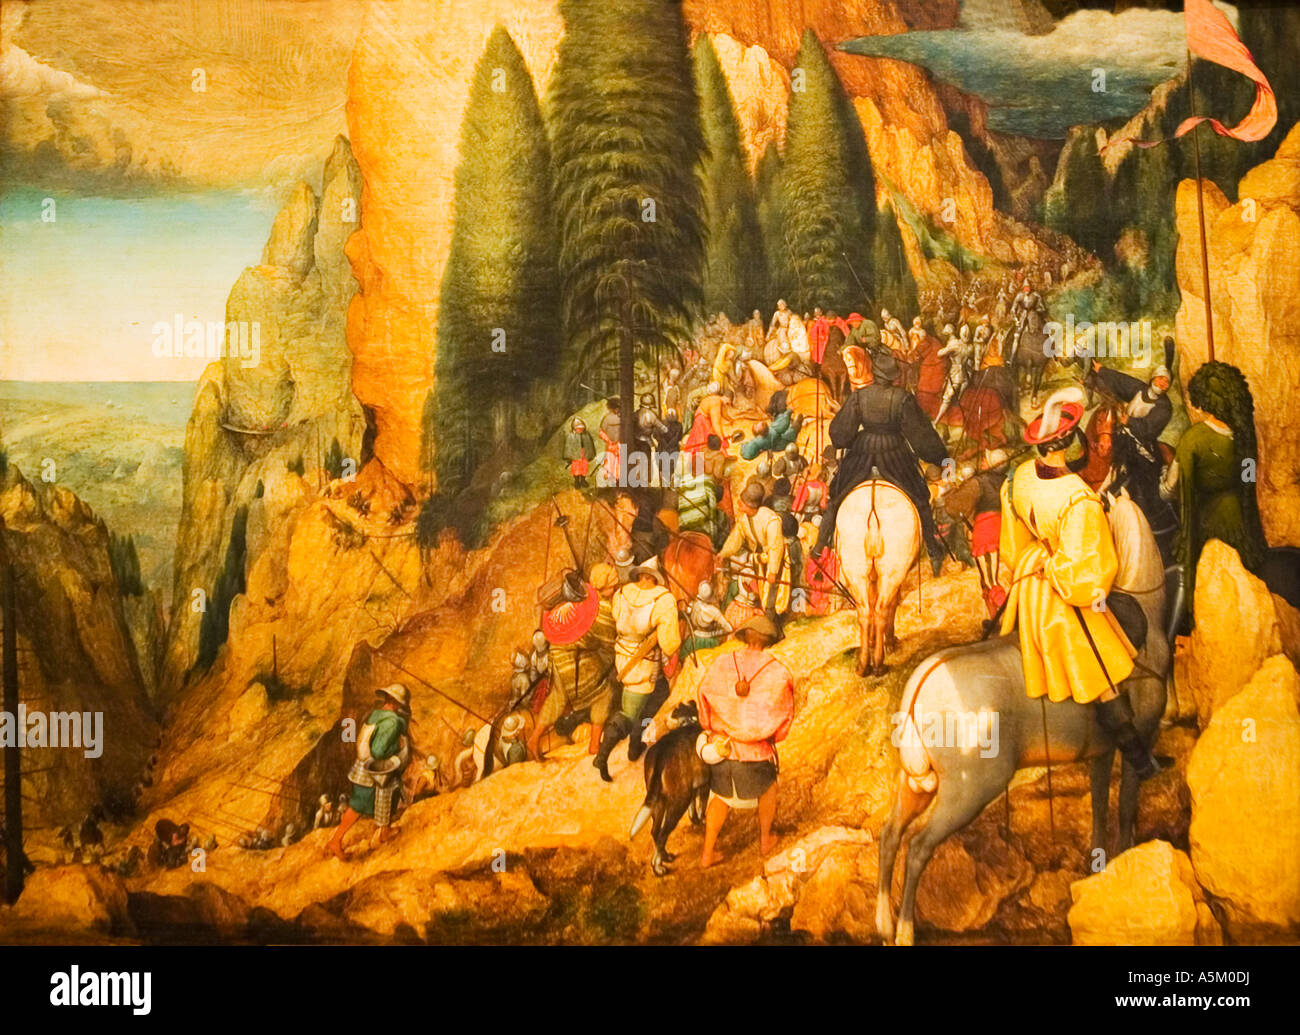 Bekehrung des Apostels Paulus gemalt von Pieter Bruegel die ältere im Jahre  1567 in der bildenden Kunst Kunsthistorisches Museum Wien Österreich E  Stockfotografie - Alamy